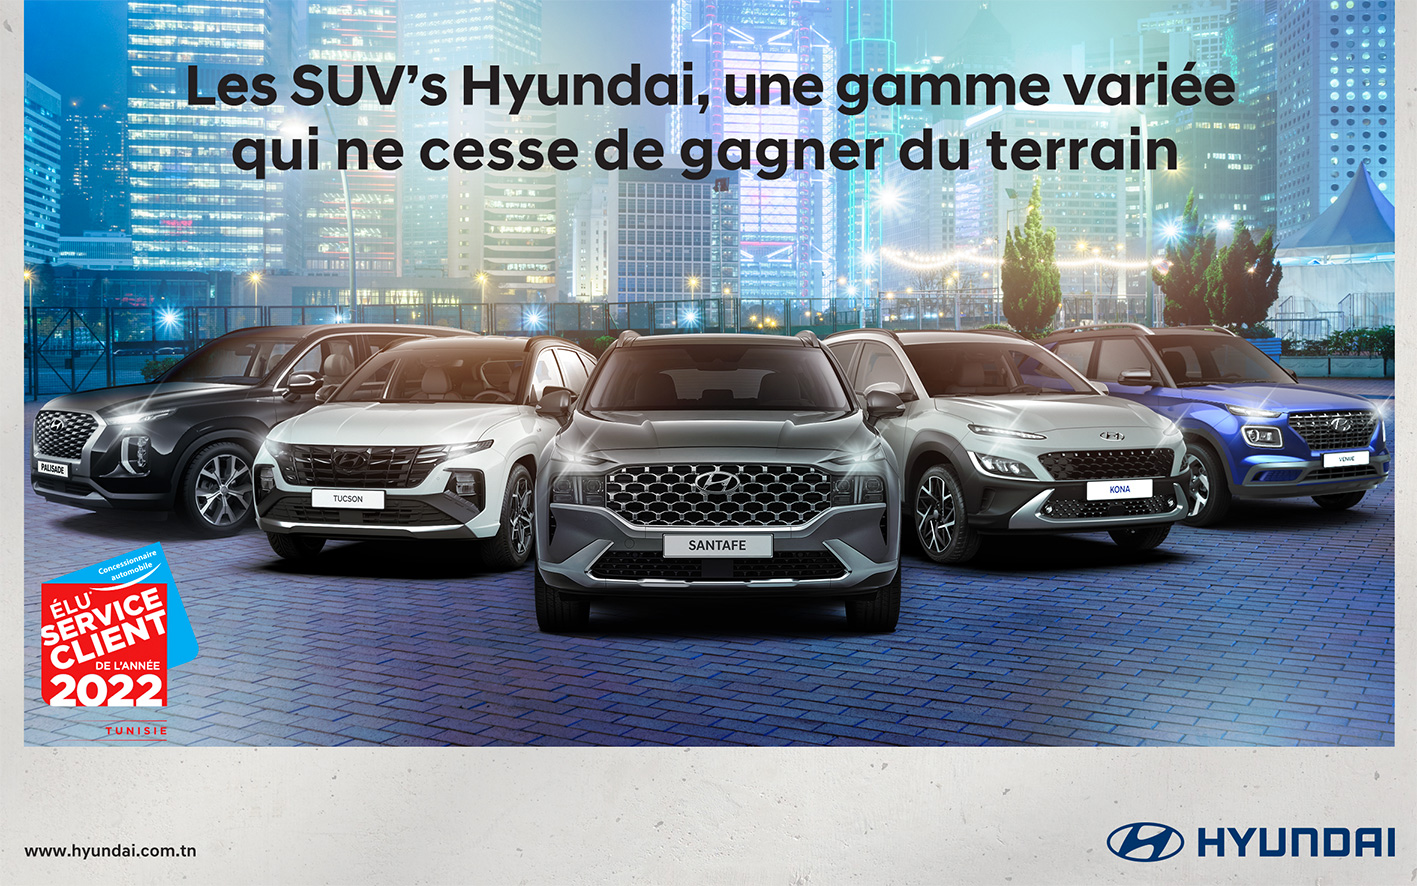 Hyundai Tunisie renforce sa gamme SUV